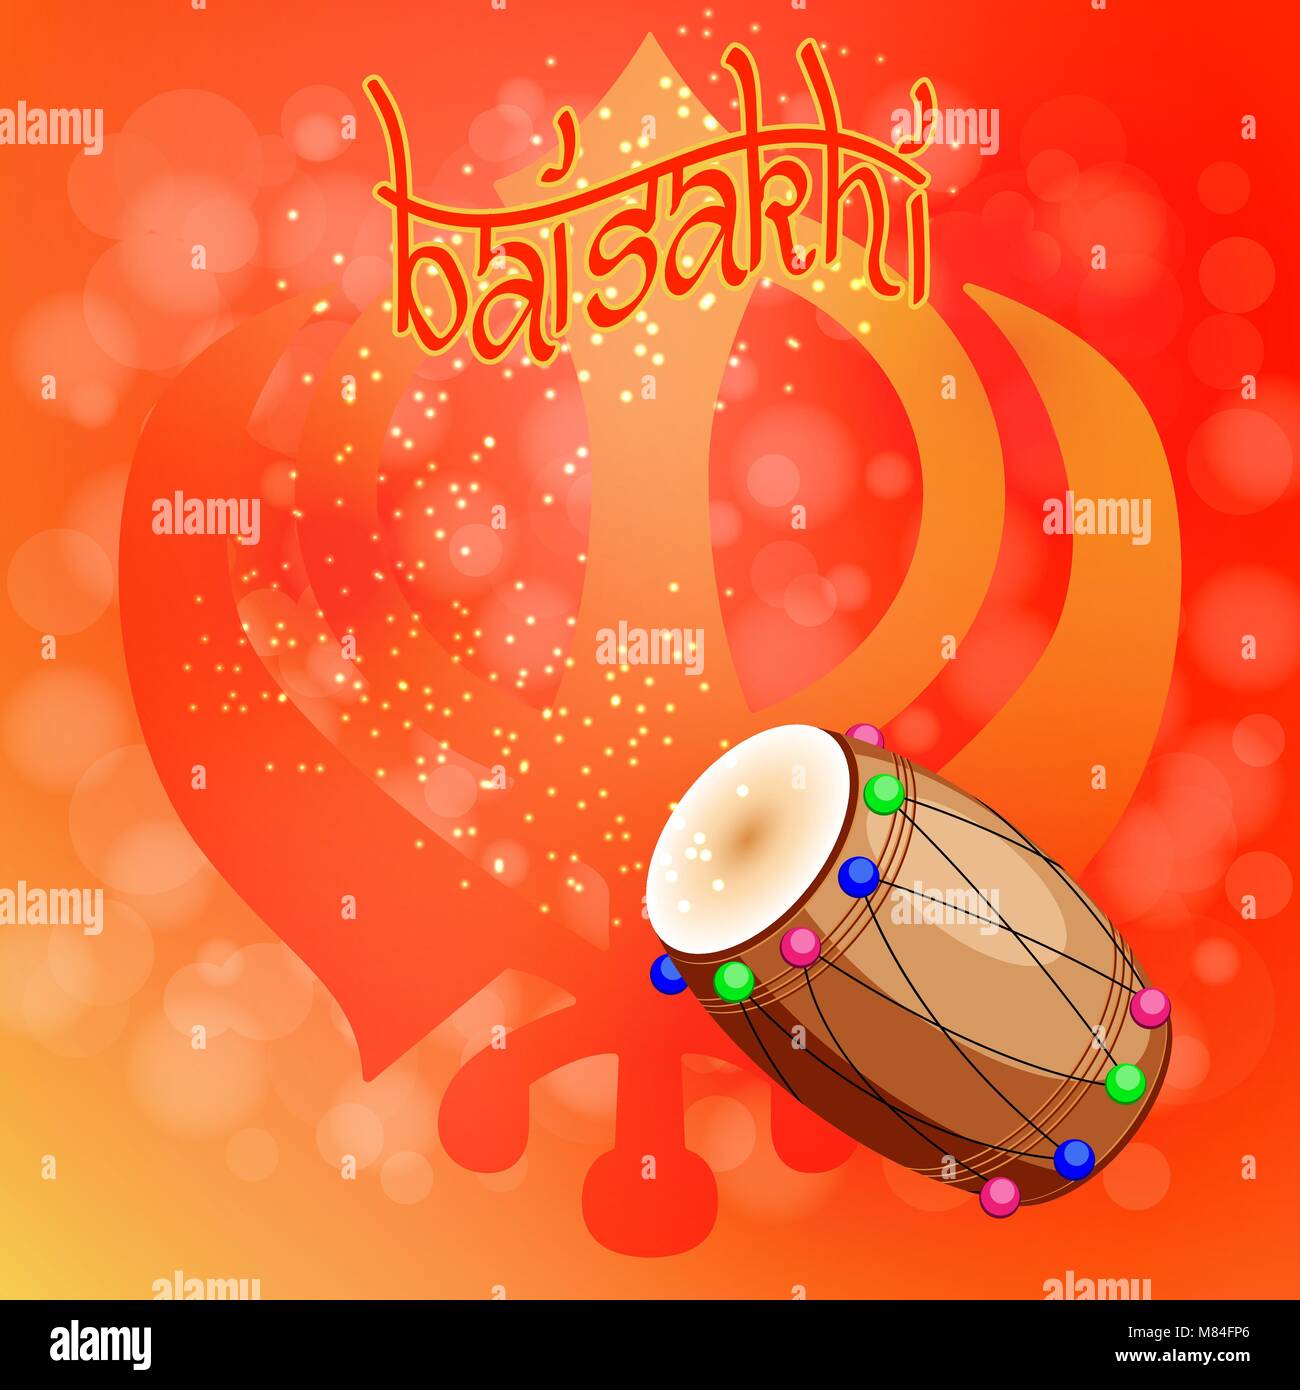 Celebration Holiday Baisakhi. New Year of the Sikhs. Khanda Sikh symbol. Drum, dholak, devanagari. On a red-orange background Stock Vector